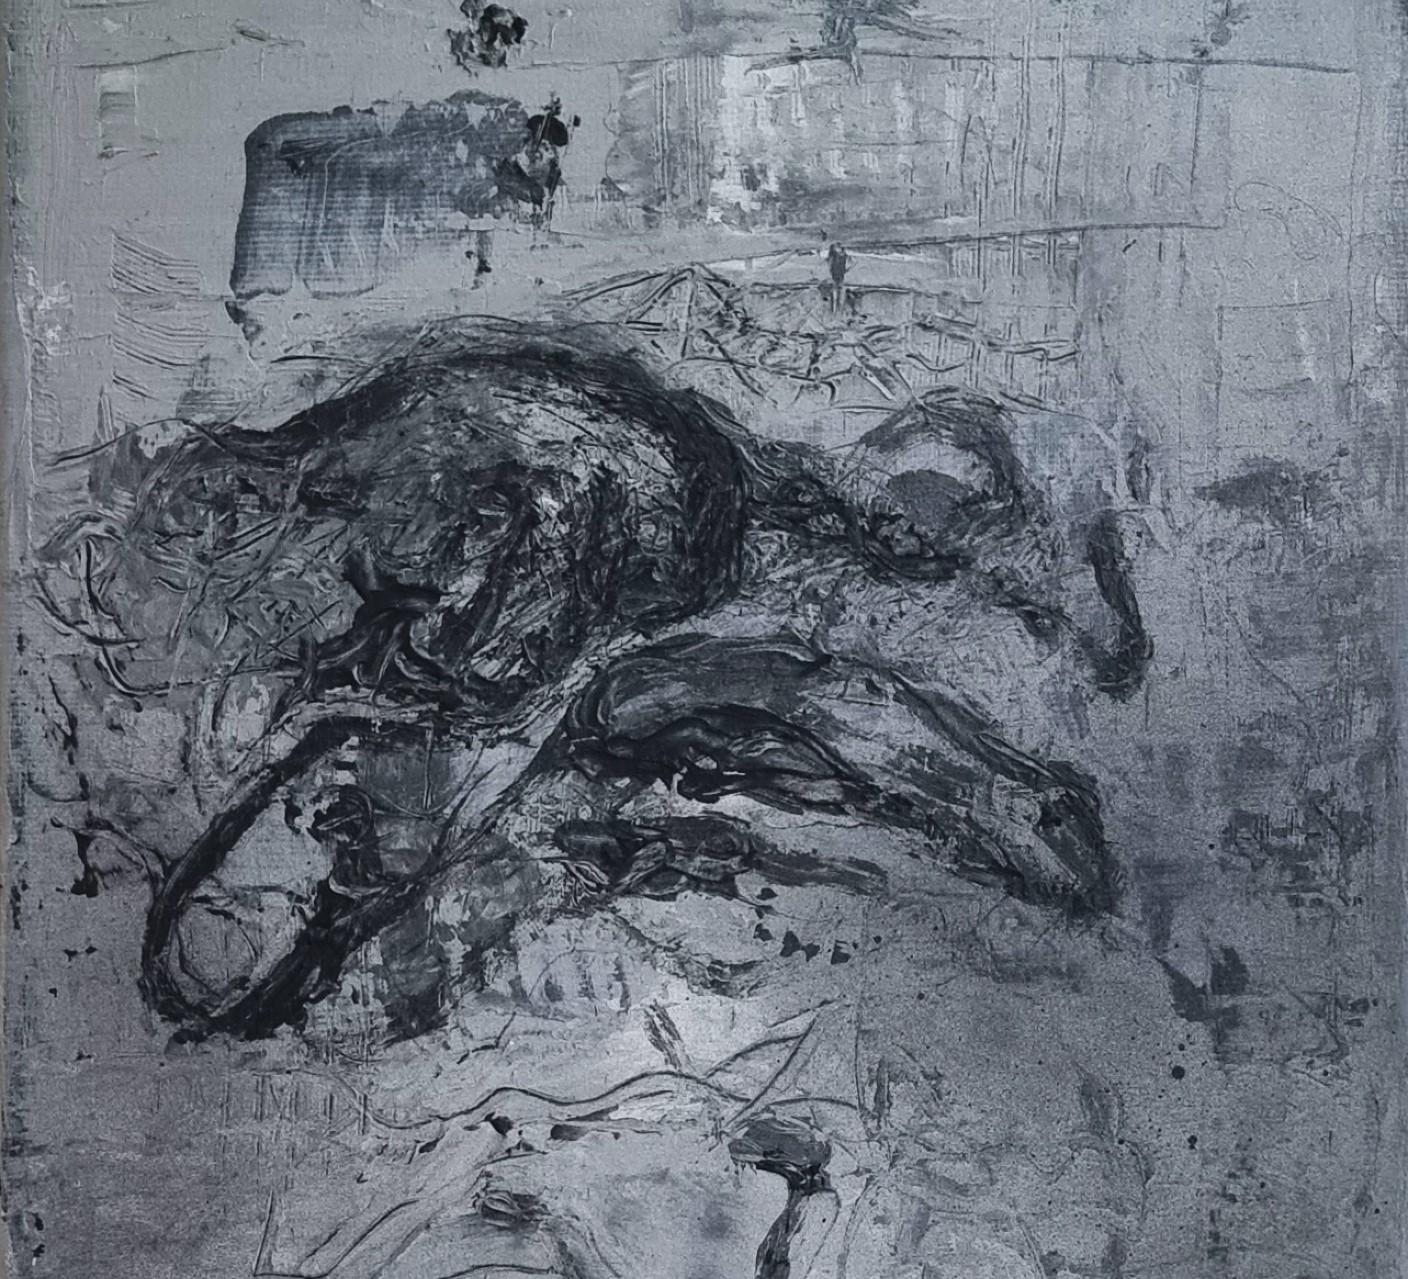 Sans titre 03 [Remains of the Remains 03] - Art contemporain, abstrait, noir - Painting de Zsolt Berszán